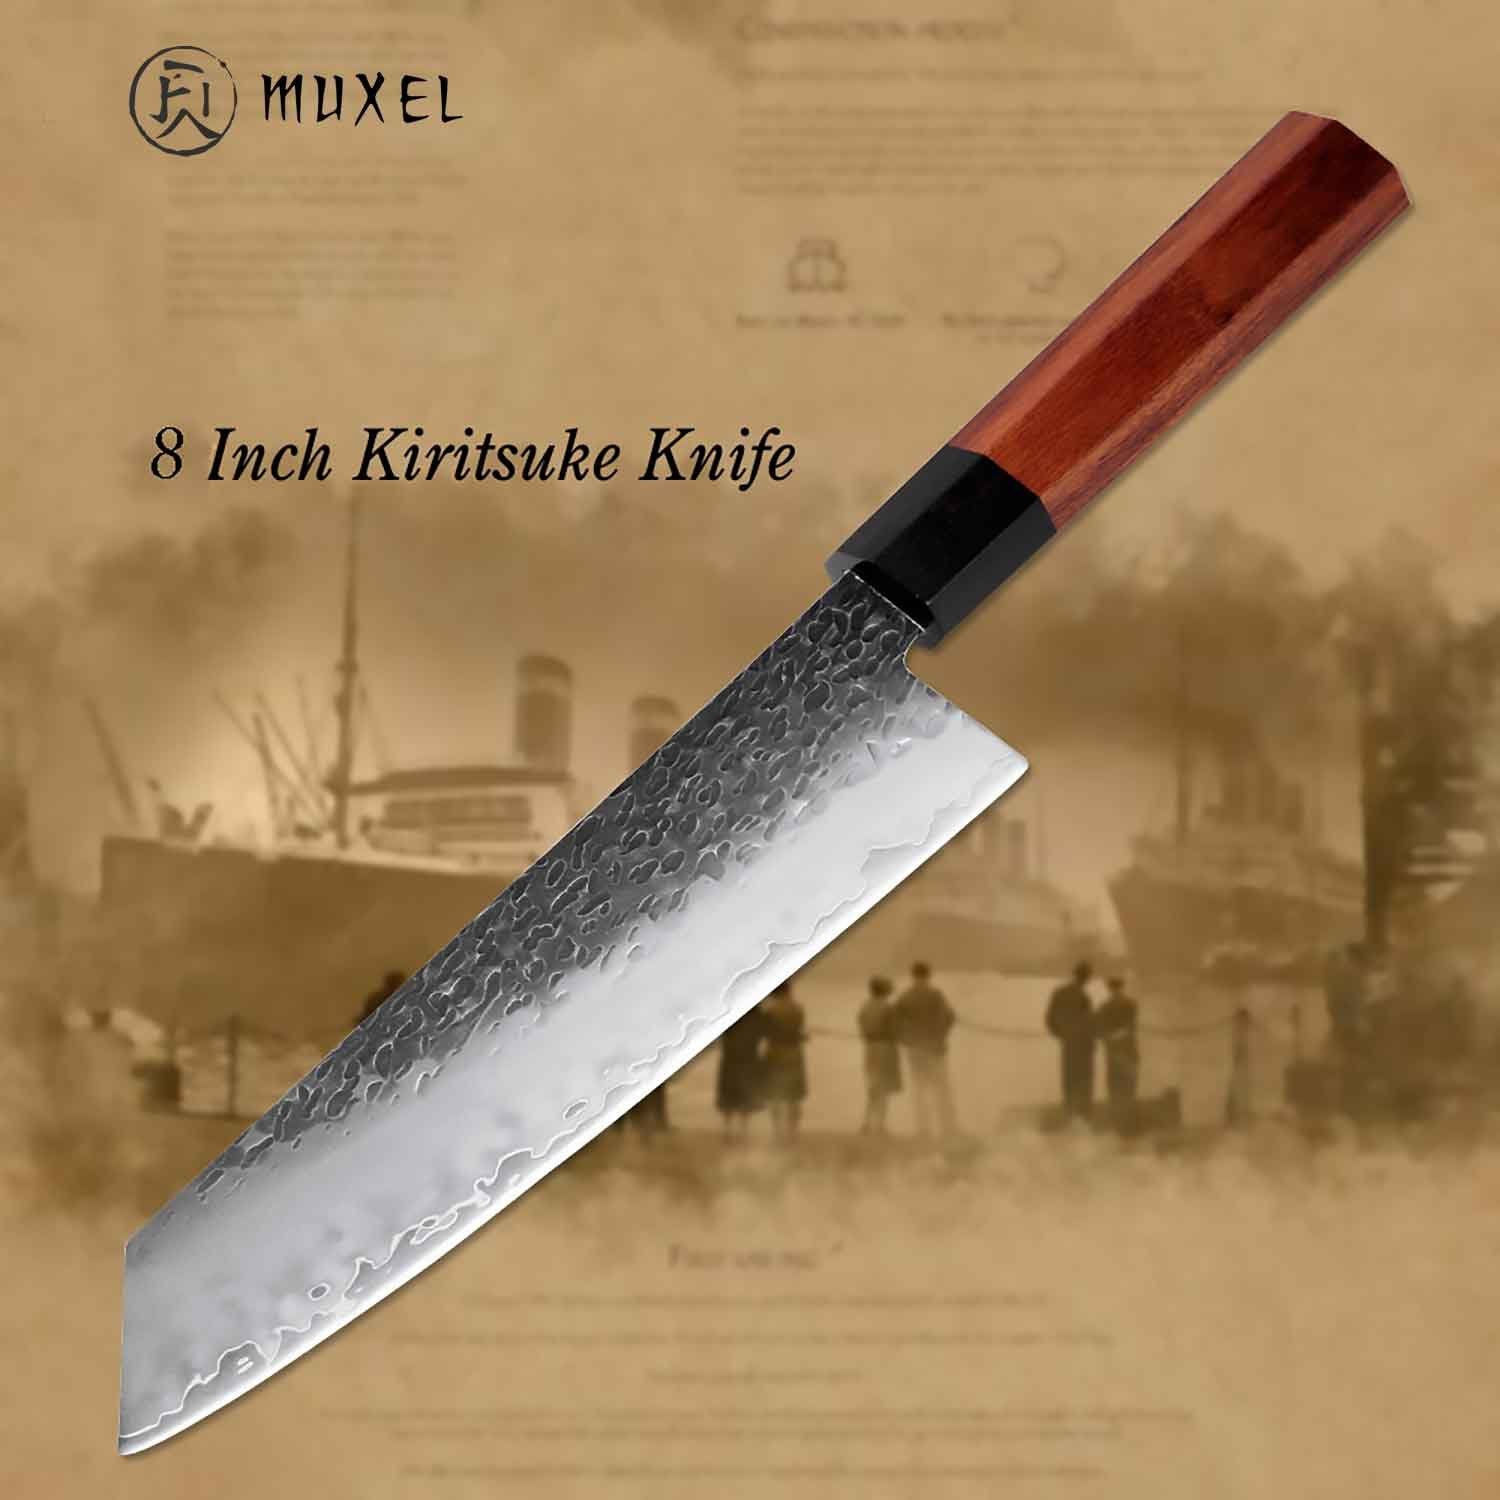 Muxel Kochmesser Kiritsuke Messer mit Octagonal Griff das etwas andere Kochmesser